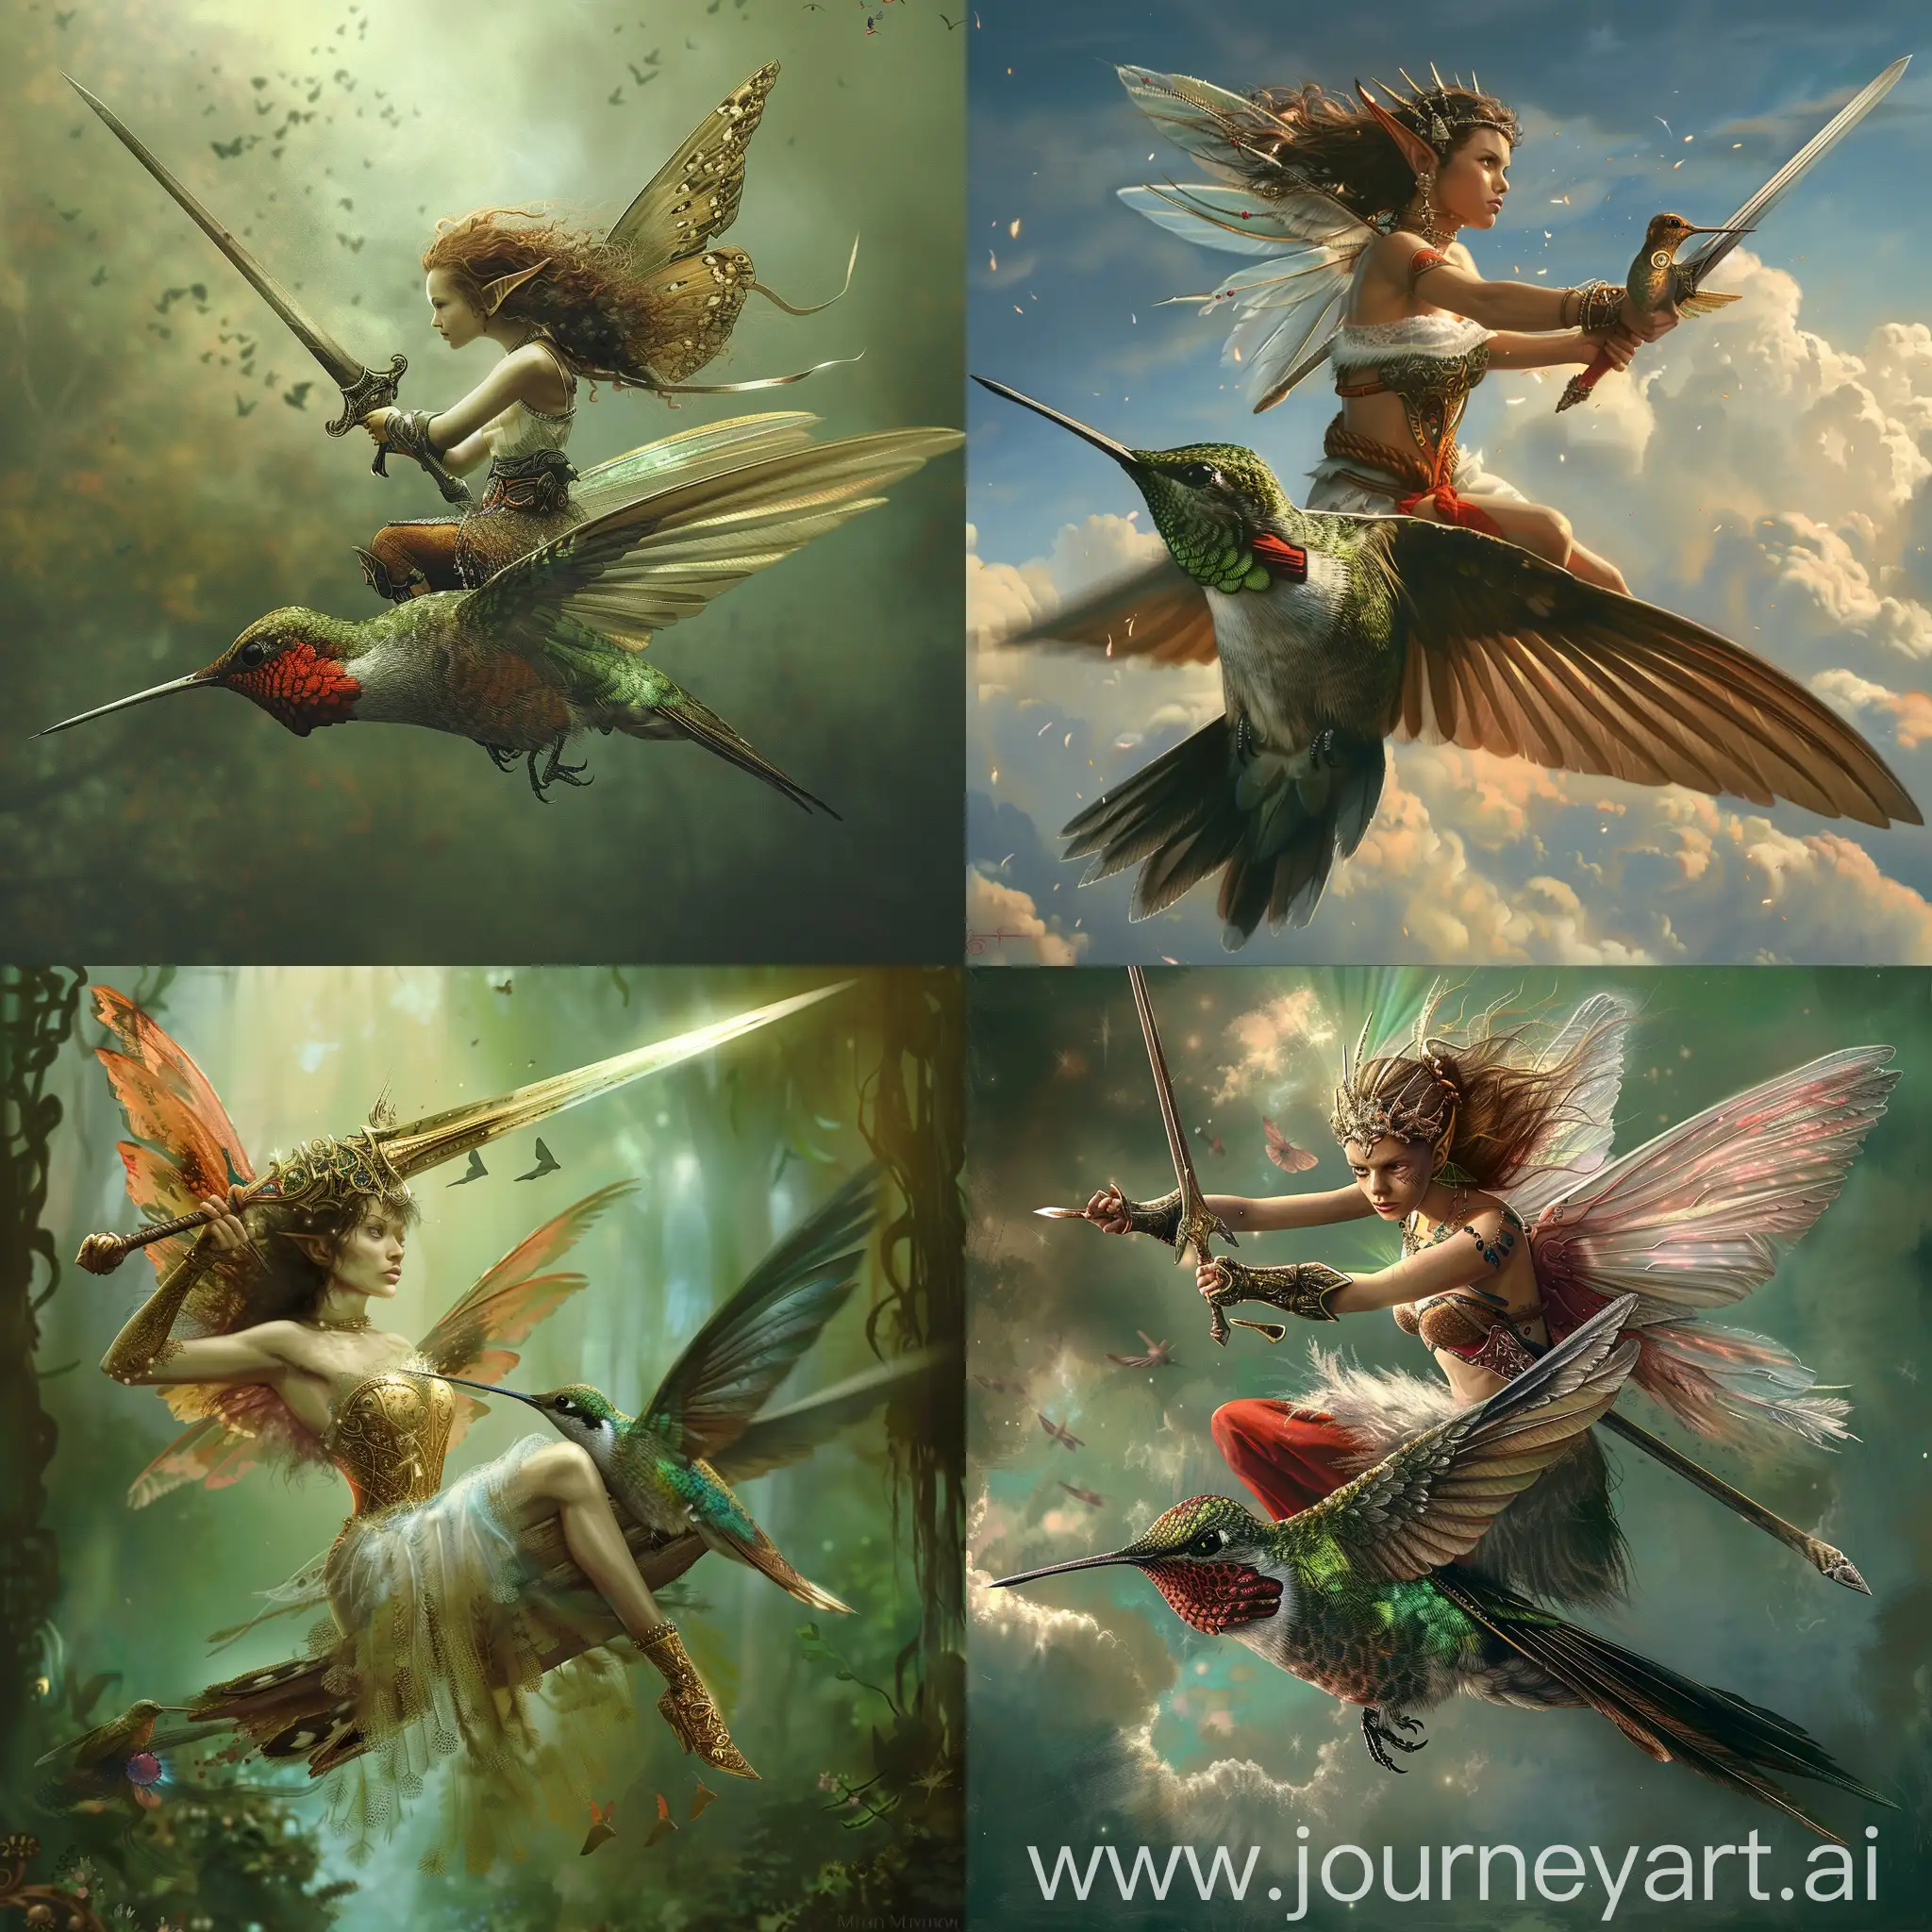 Warrior fairy wielding a sword riding a hummingbird into battle